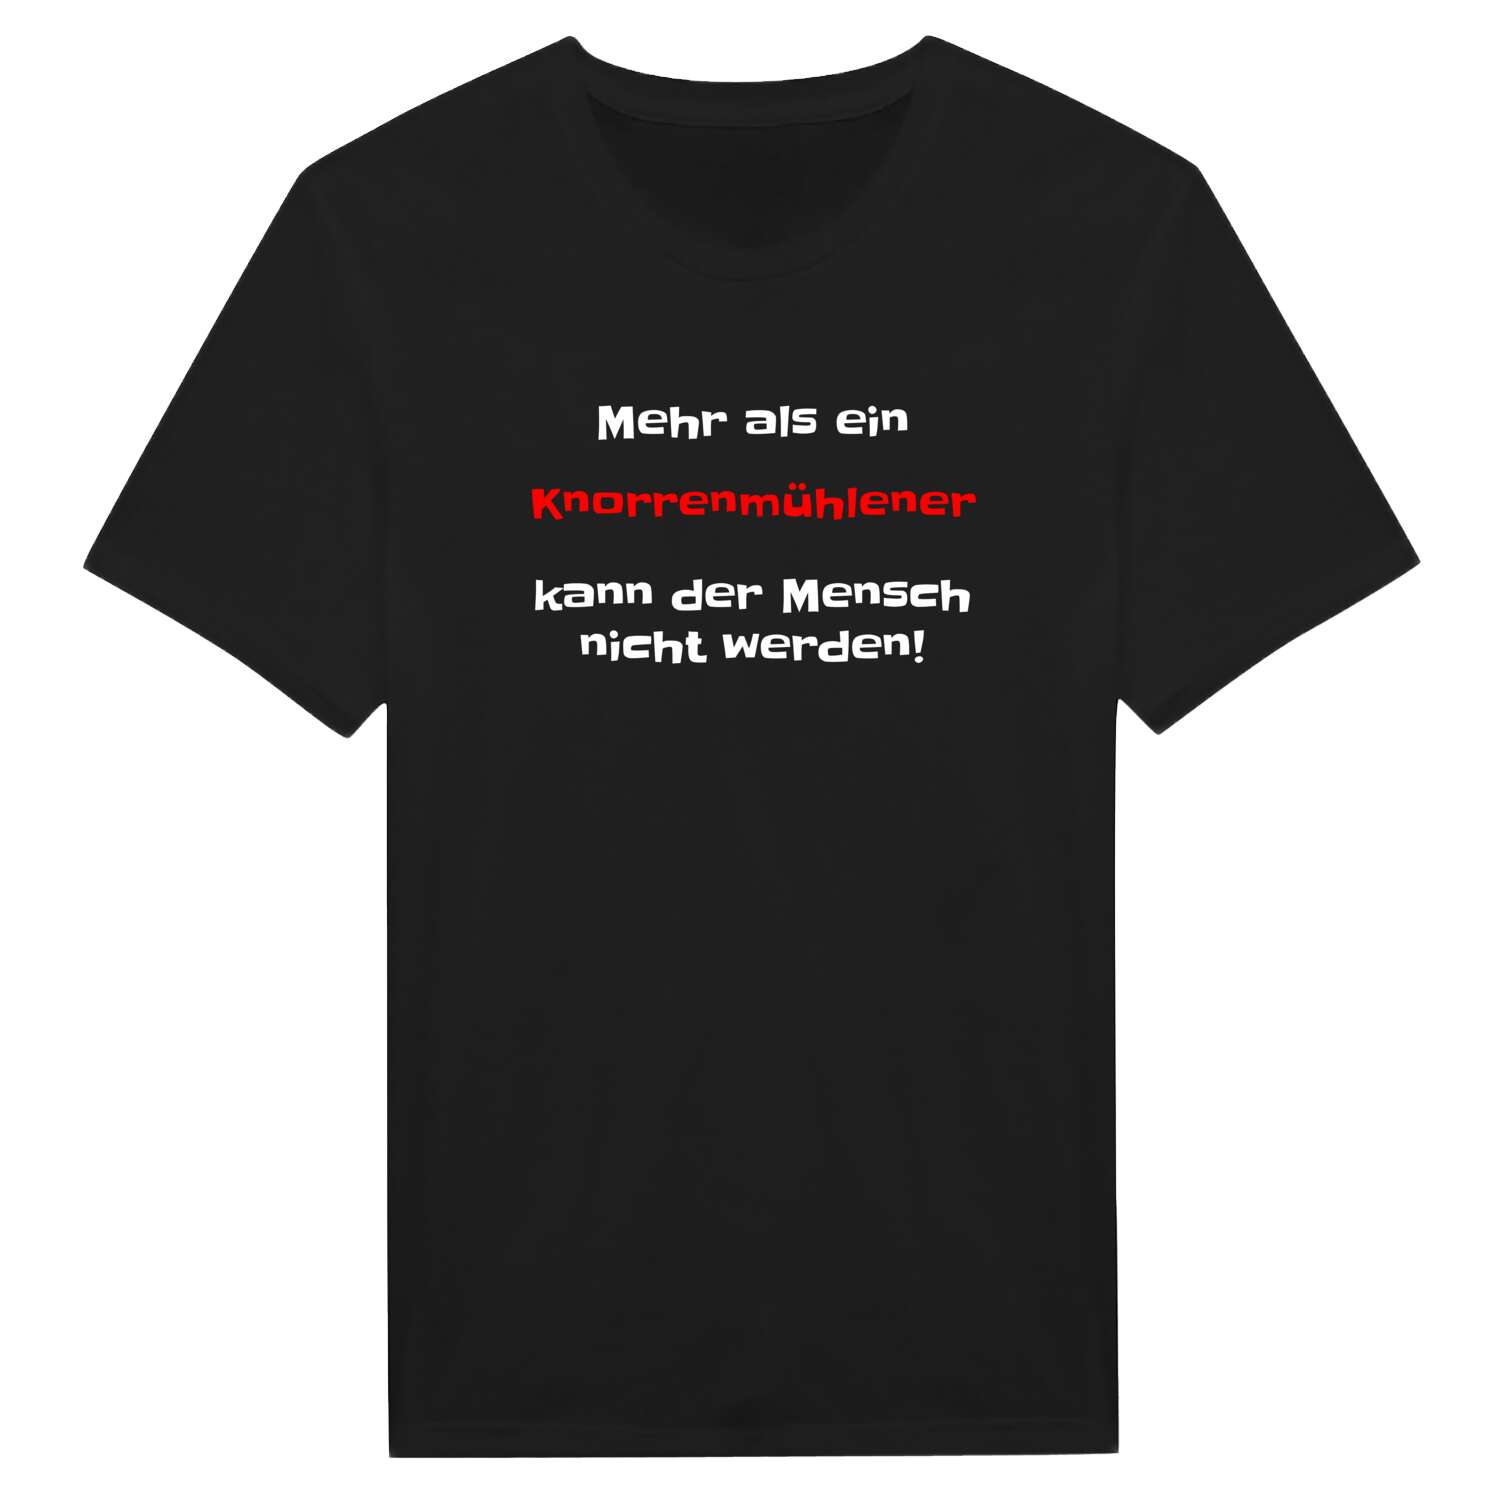 Knorrenmühle T-Shirt »Mehr als ein«